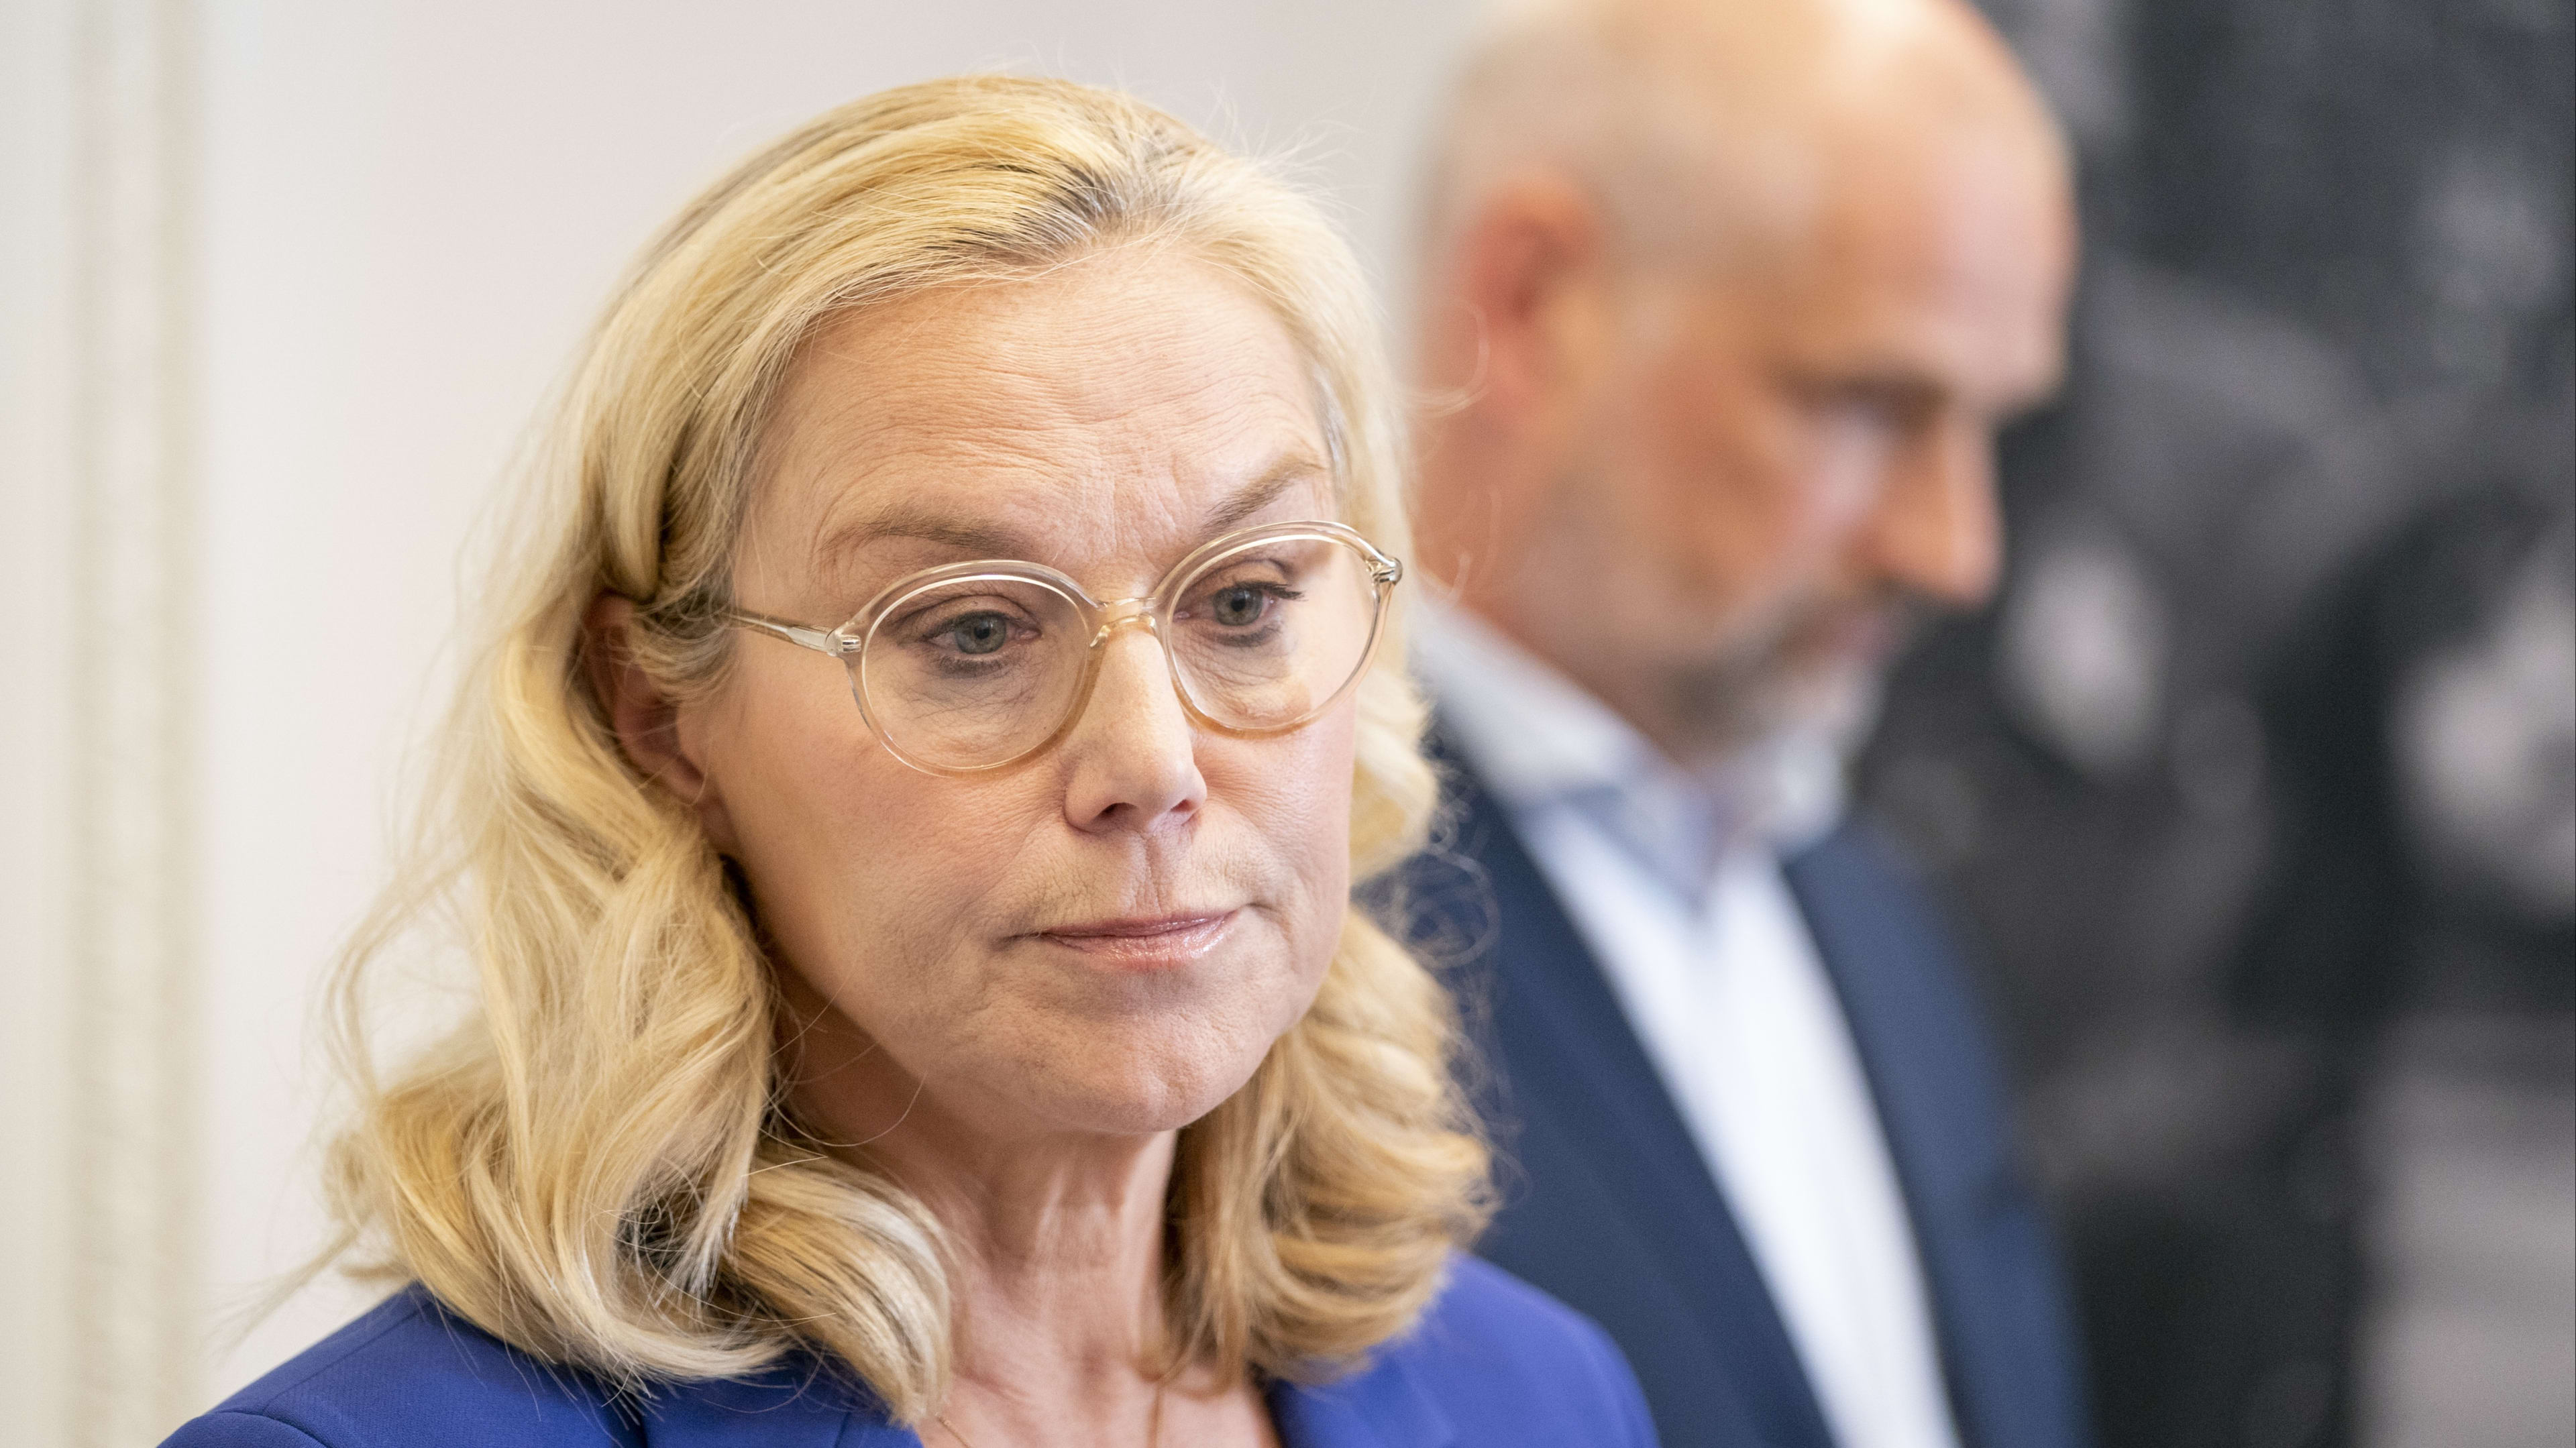 Sigrid Kaag wil einde aan 'glijdende schaal' van bedreigingen: 'Openbare klimaat in Nederland vergiftigd'